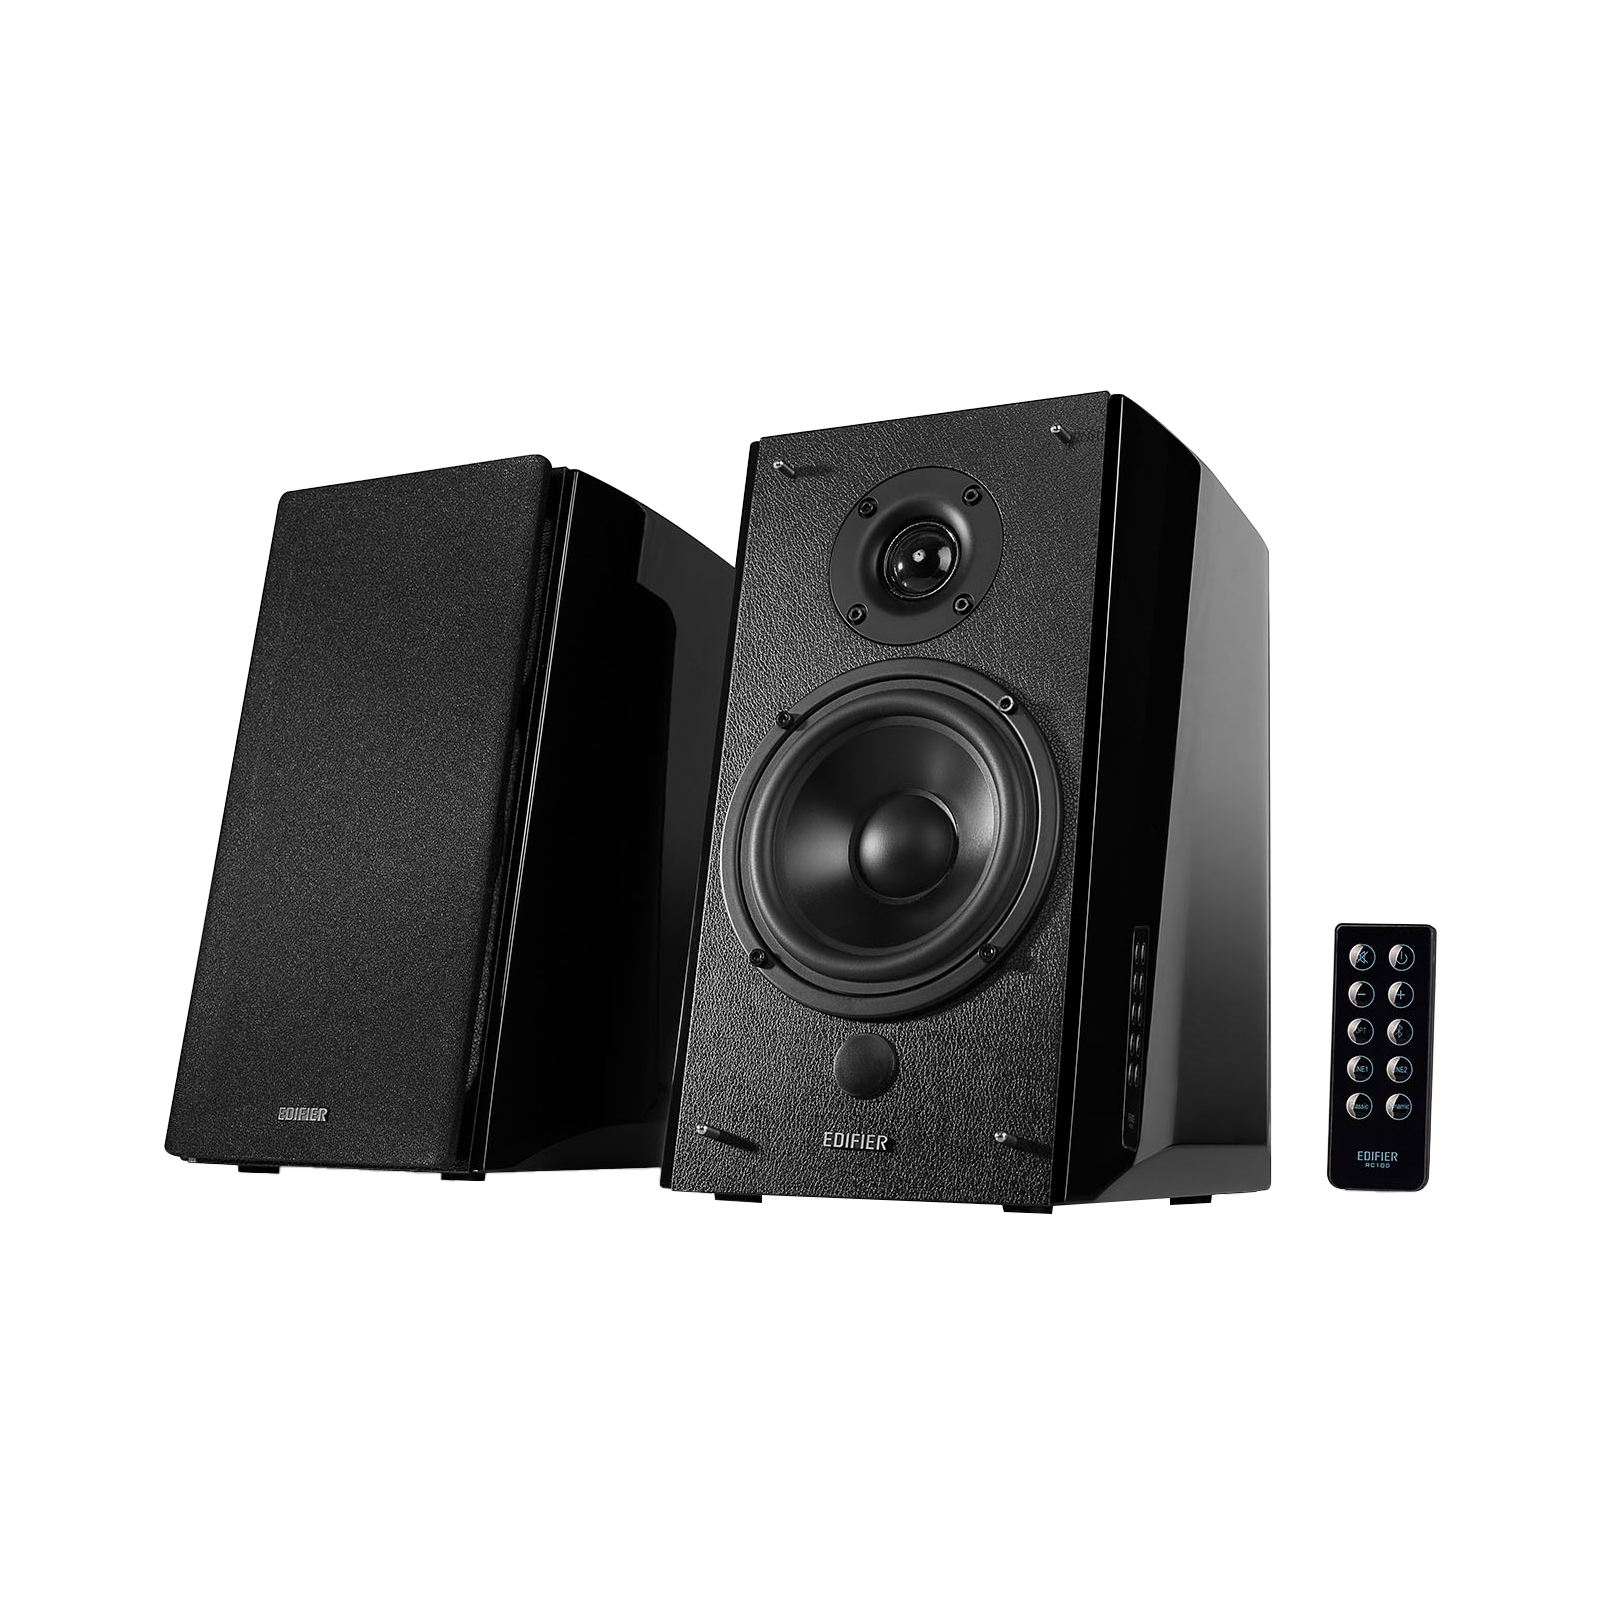 R2000DB Versatile speakers equipped for authentic audio